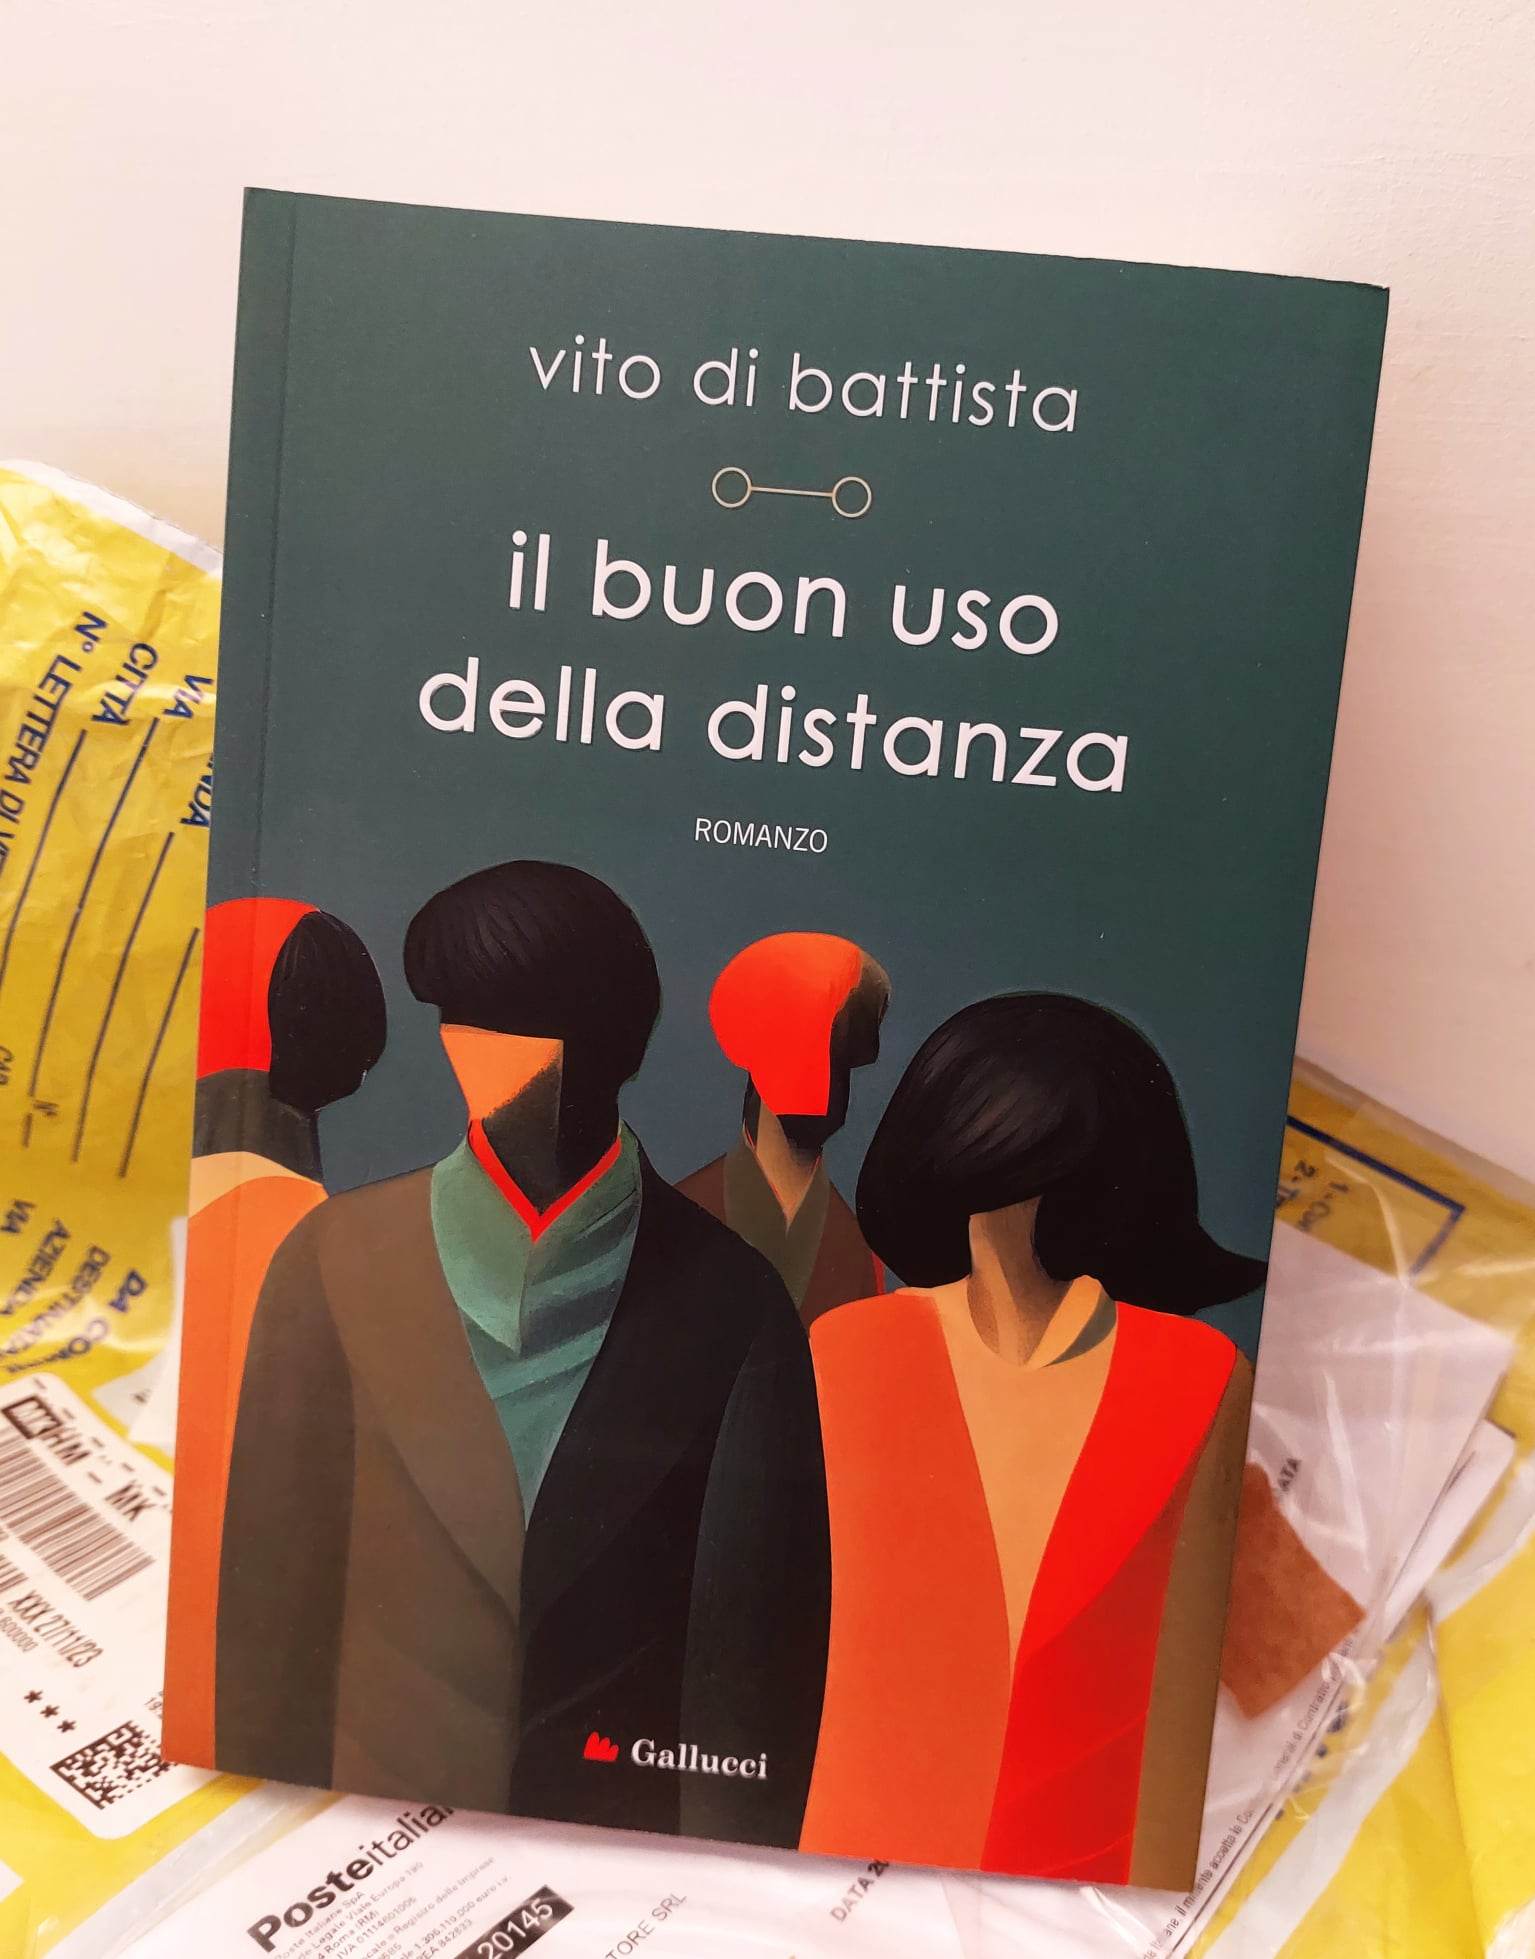 Il buon uso della distanza” di Vito Di Battista